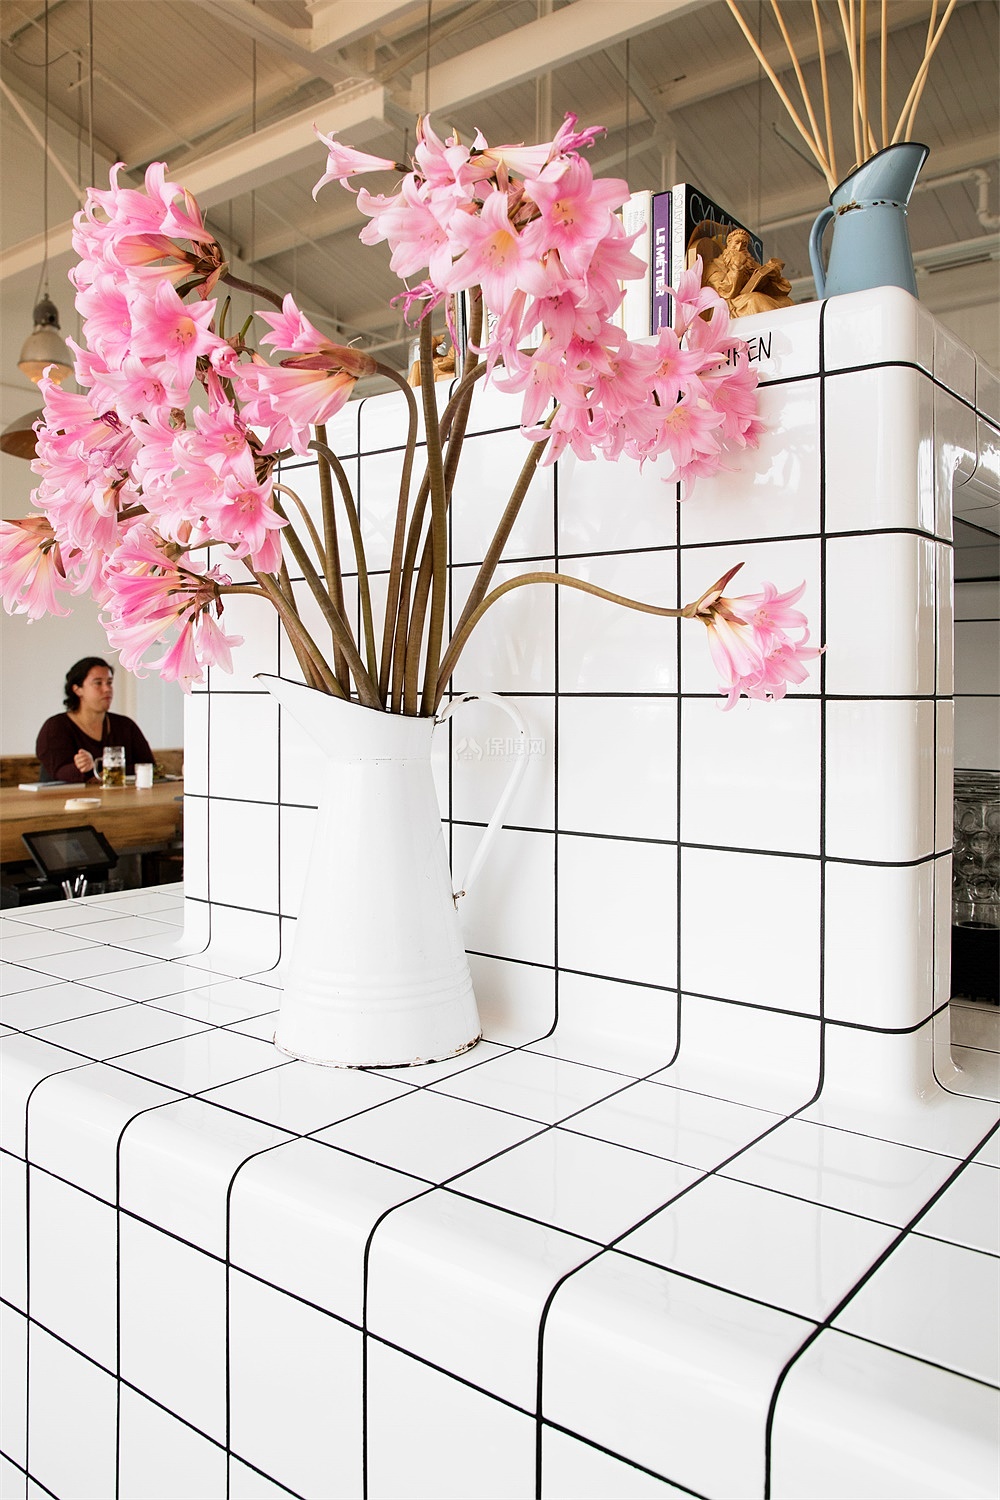 Radhaus酒吧餐厅瓷砖桌台设计效果图